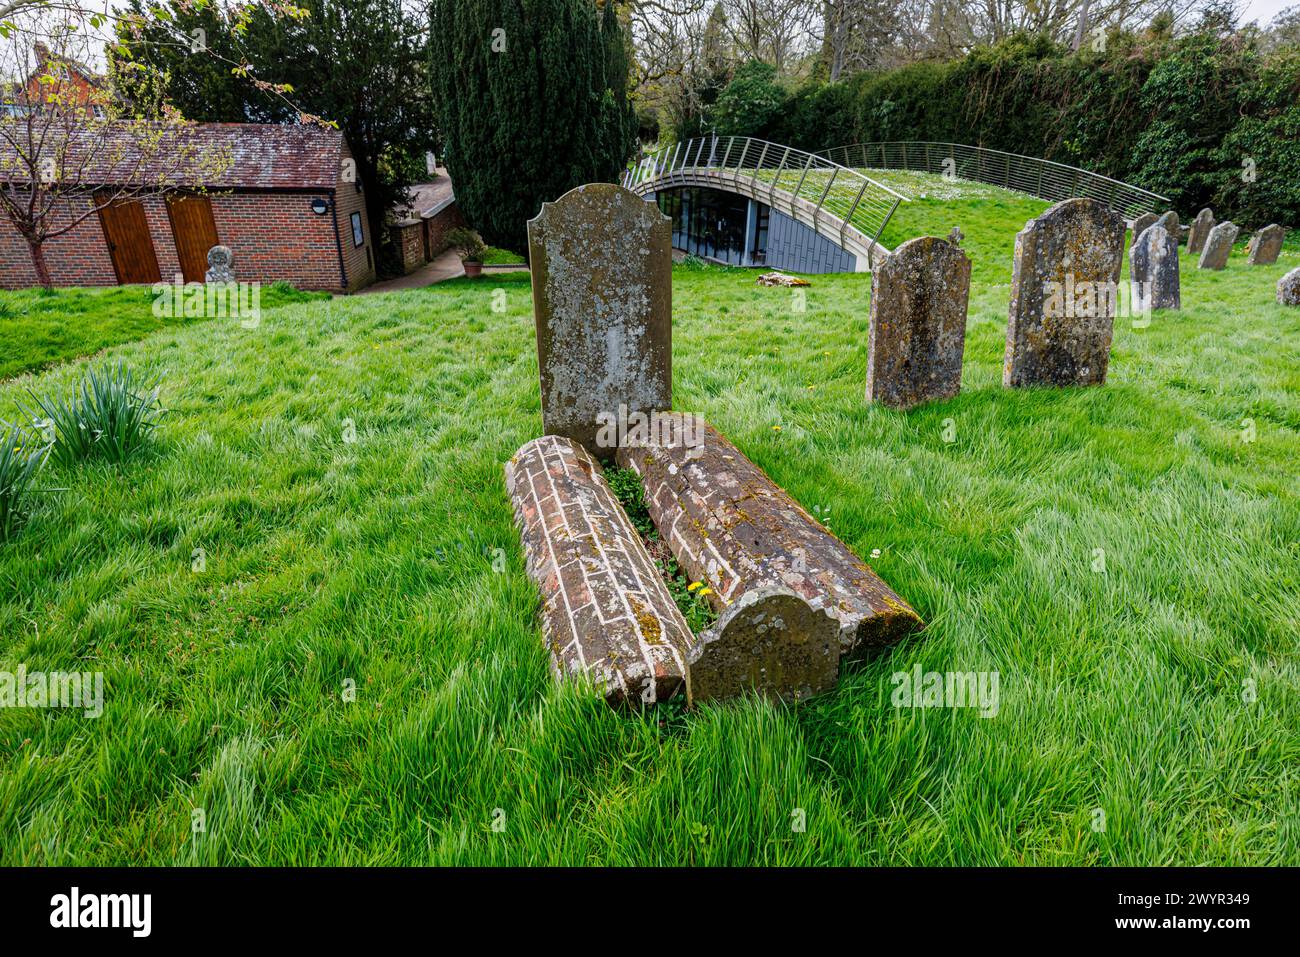 Seltene Ziegelsteingräber auf dem Friedhof der St. Mary's Church in Chiddingfold, einem Dorf in Surrey, Südosten Englands Stockfoto